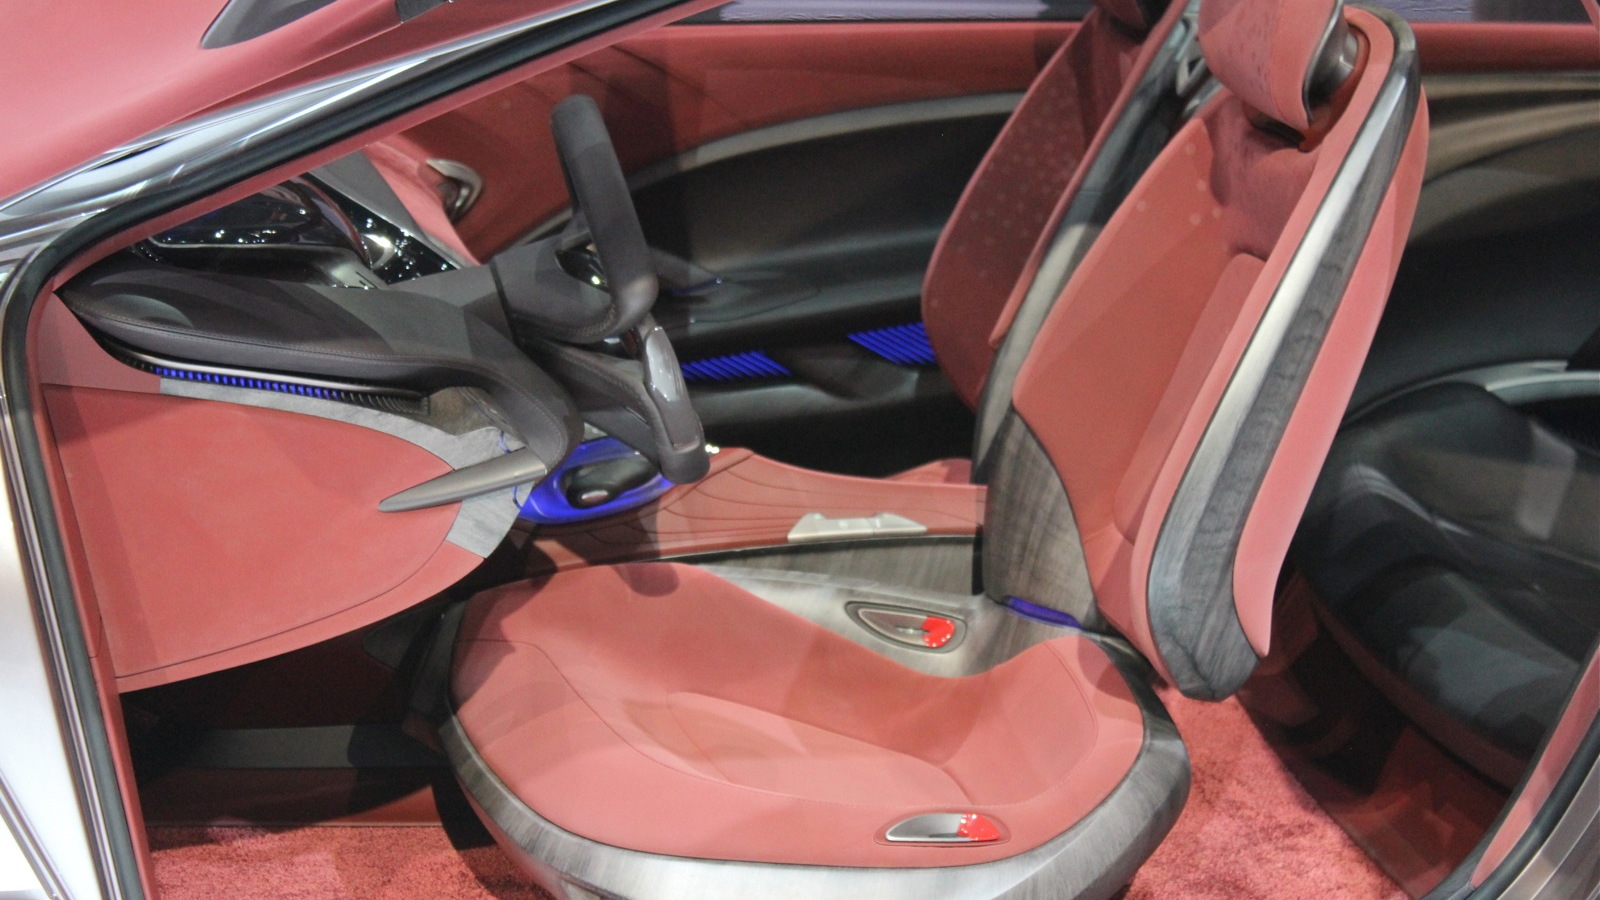 2012 Hyundai i-oniq concept